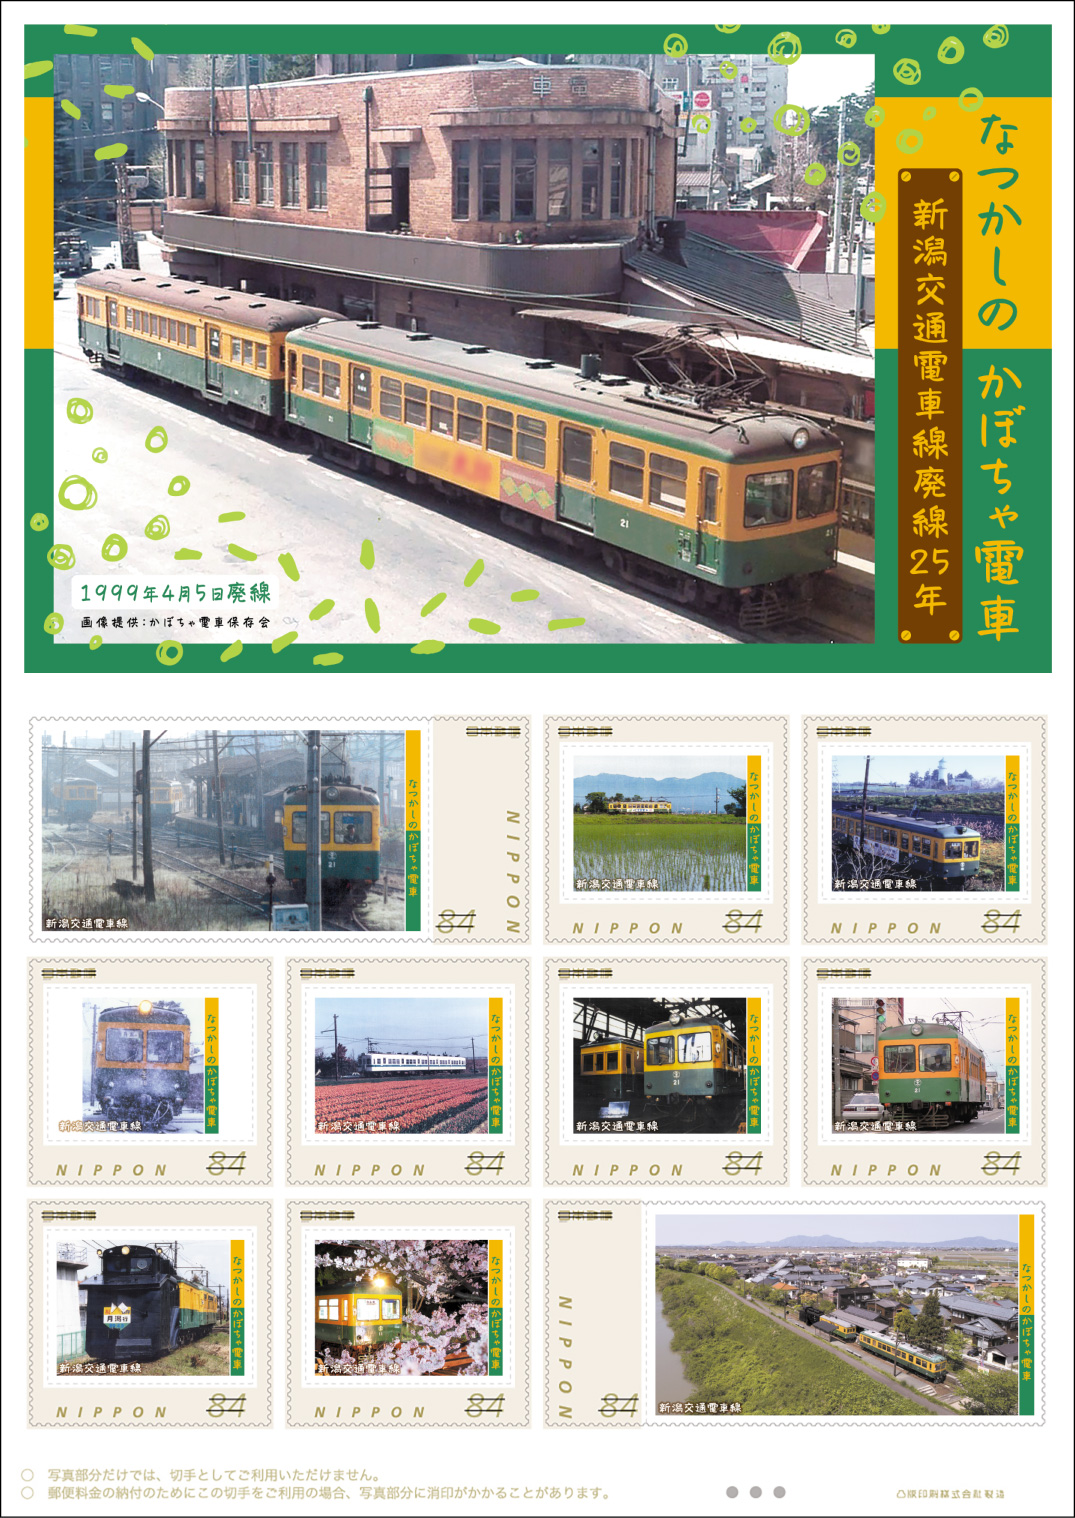 オリジナル フレーム切手「なつかしのかぼちゃ電車　新潟交通電車線廃線25年」 の販売開始